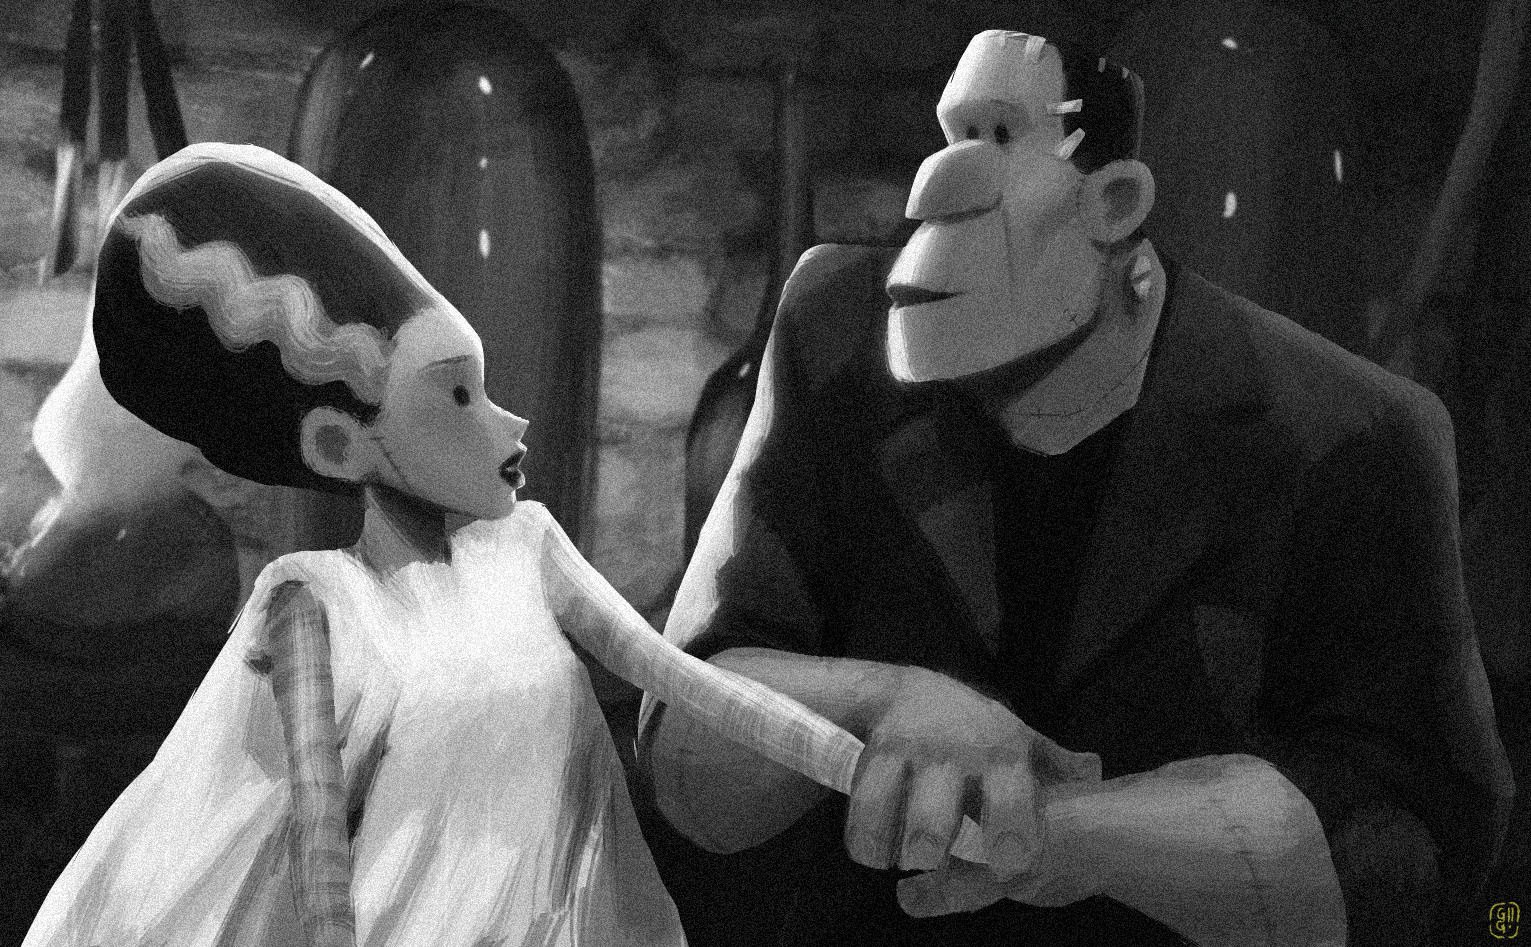 Фото Франкенштейн со своей невестой, арт на кинокартину Невеста Франкенштейна / Bride of Frankenstein, by Gop Gap